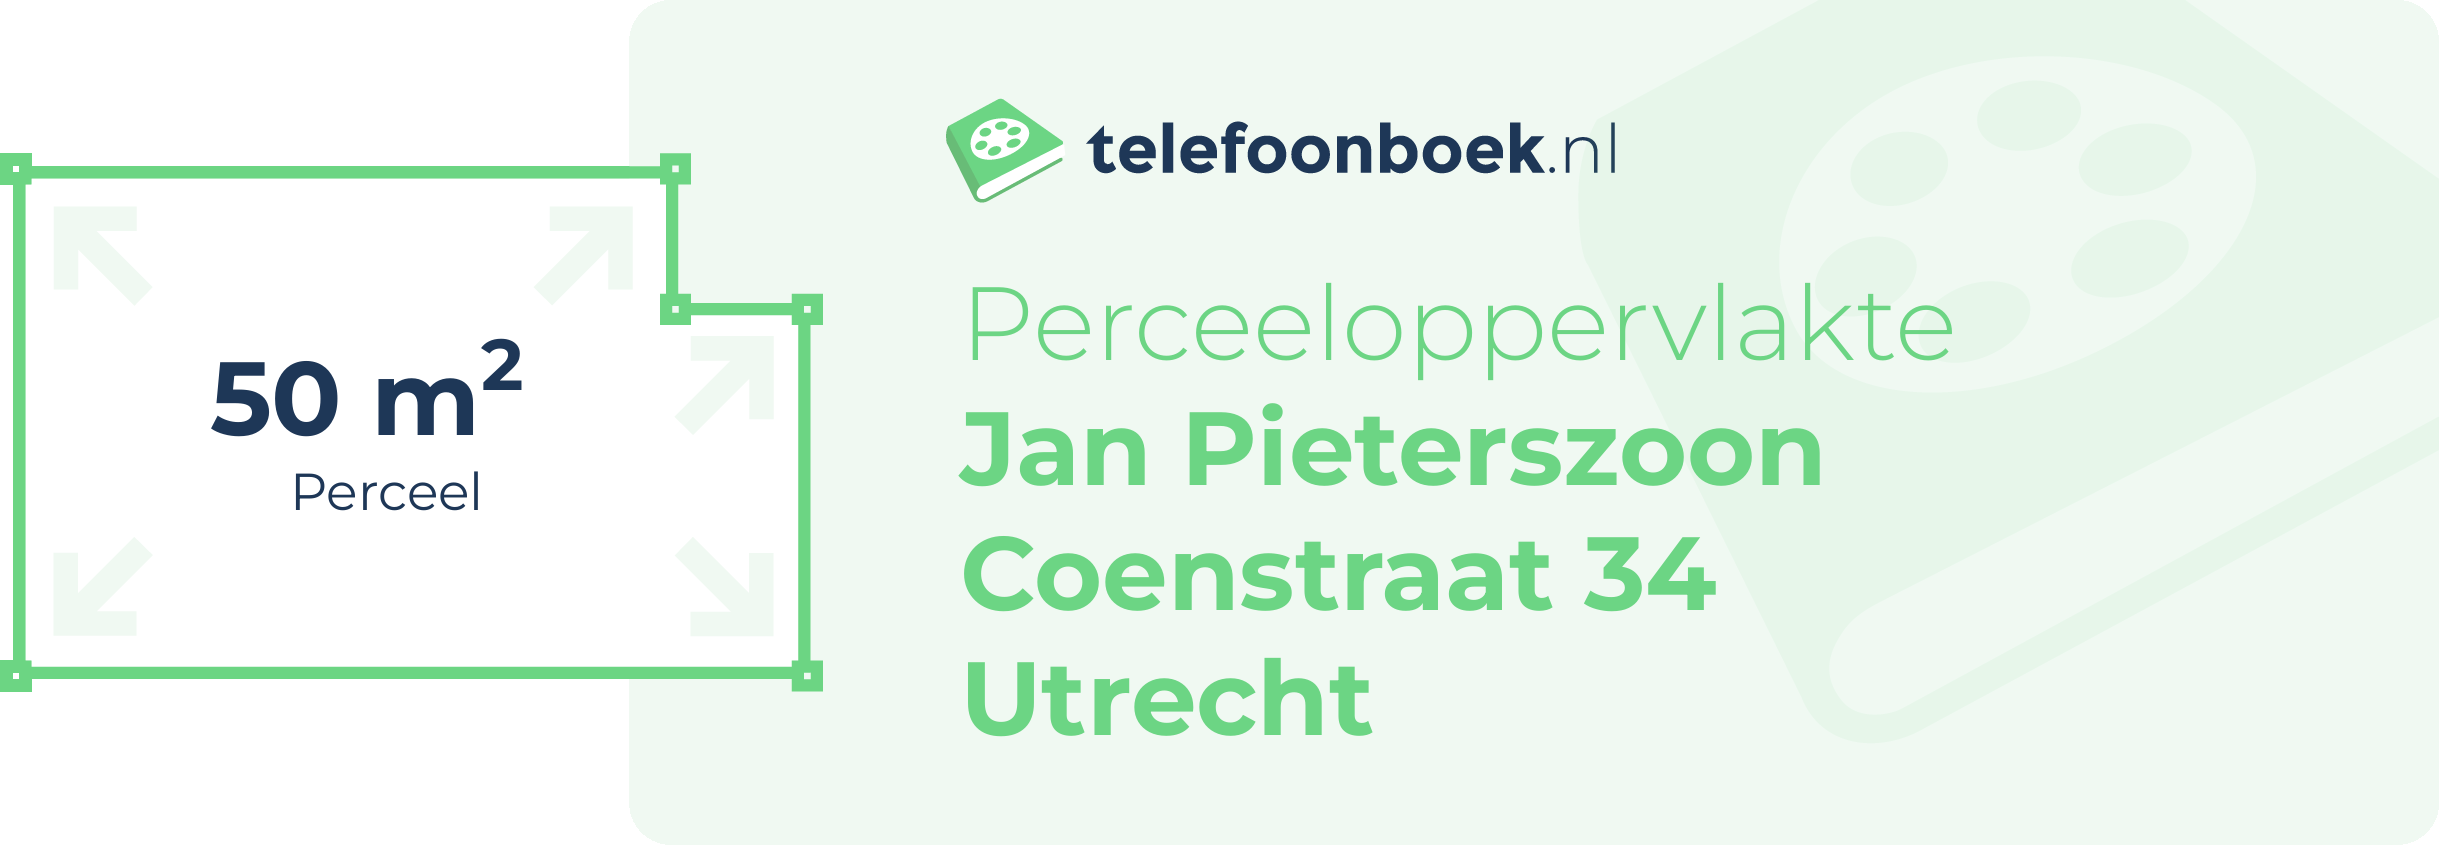 Perceeloppervlakte Jan Pieterszoon Coenstraat 34 Utrecht